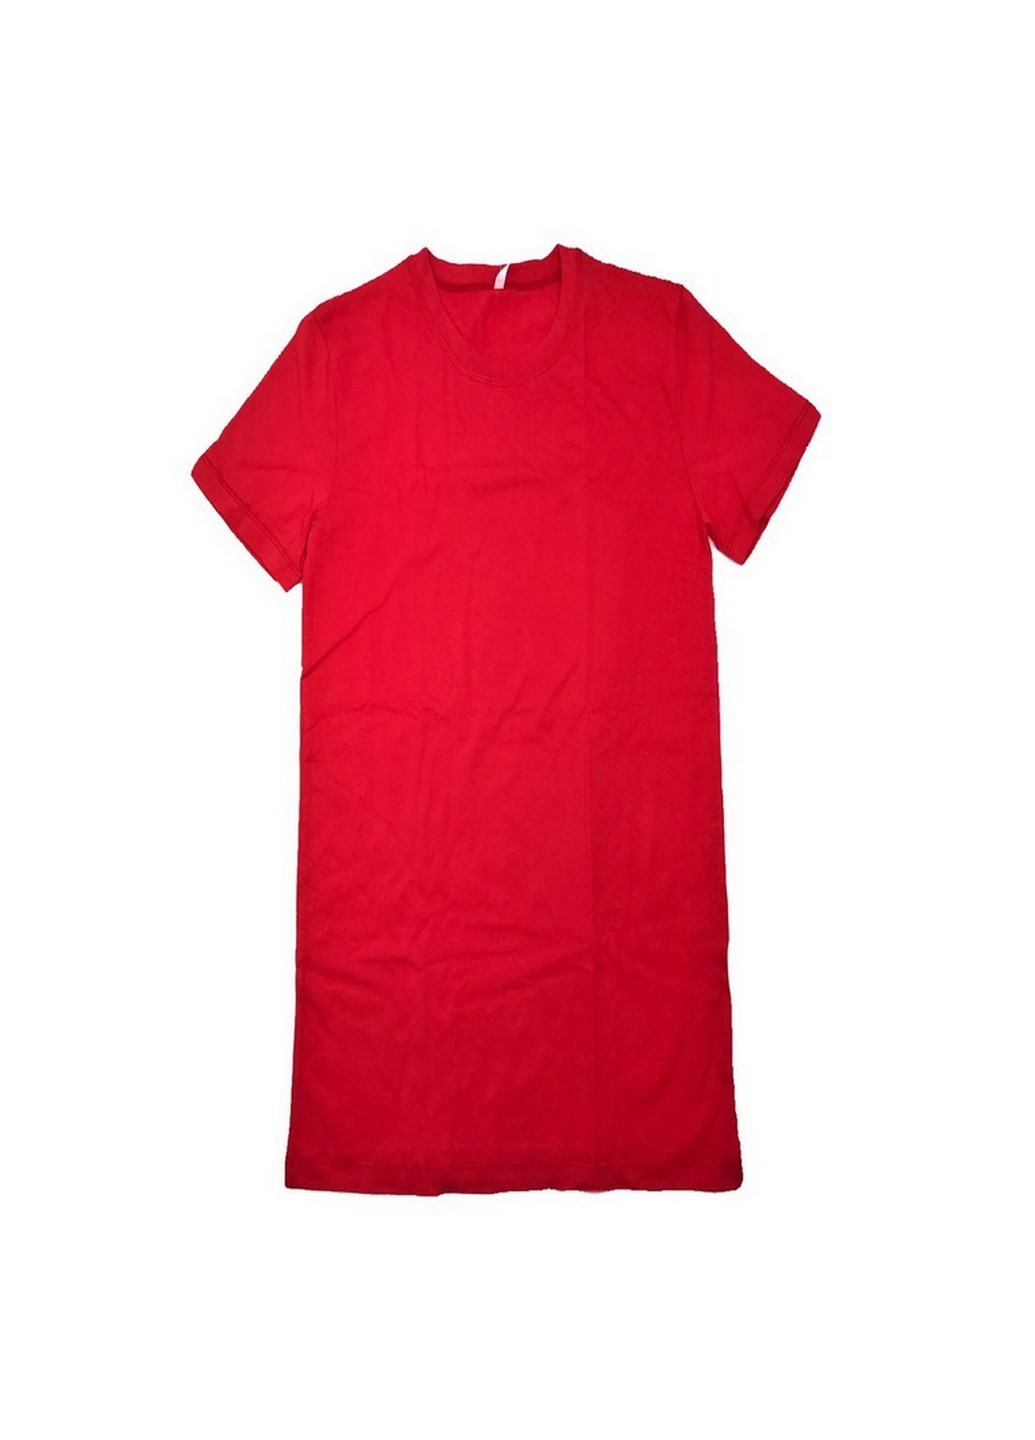 Червона футболка чоловіча N.EL.